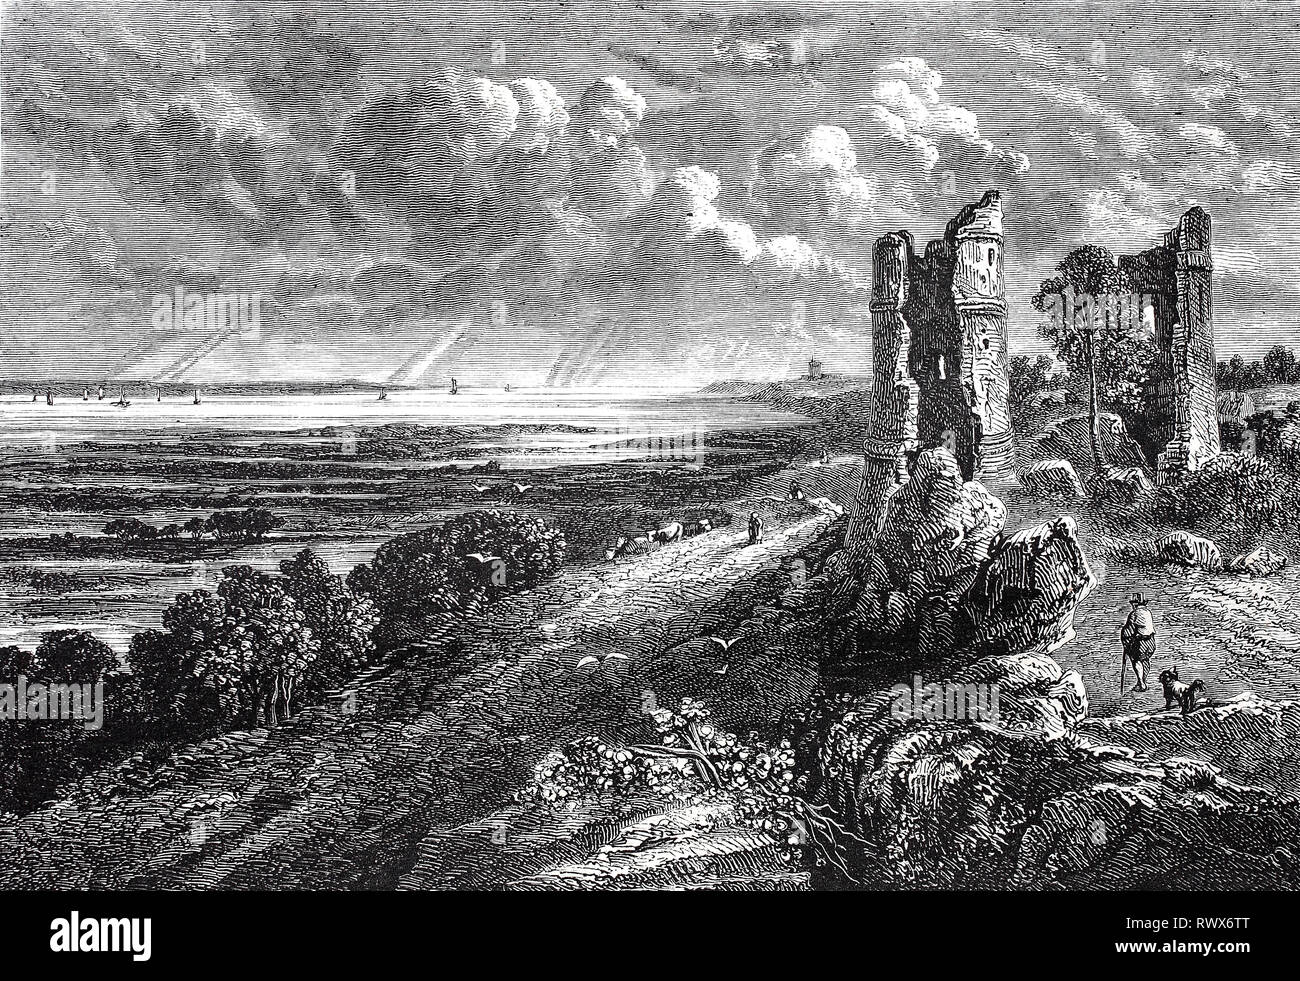 Landschaft am Meer mit Burgruine, Hadleigh Castle ist eine Burgruine auf einer HÃ¼gelkette Ã¼ber dem Ã"stuar der Themse sÃ¼dlich der Stadt Hadleigh in der englischen Grafschaft Essex, nach einem GemÃ¤lde von John Constable/Landschaft am Meer mit einer Burgruine, Hadleigh Castle ist eine Burgruine auf einem Hügel oberhalb der Mündung der Themse südlich der Stadt hadleigh in der englischen Grafschaft Essex, nach einem Gemälde von John Constable Stockfoto